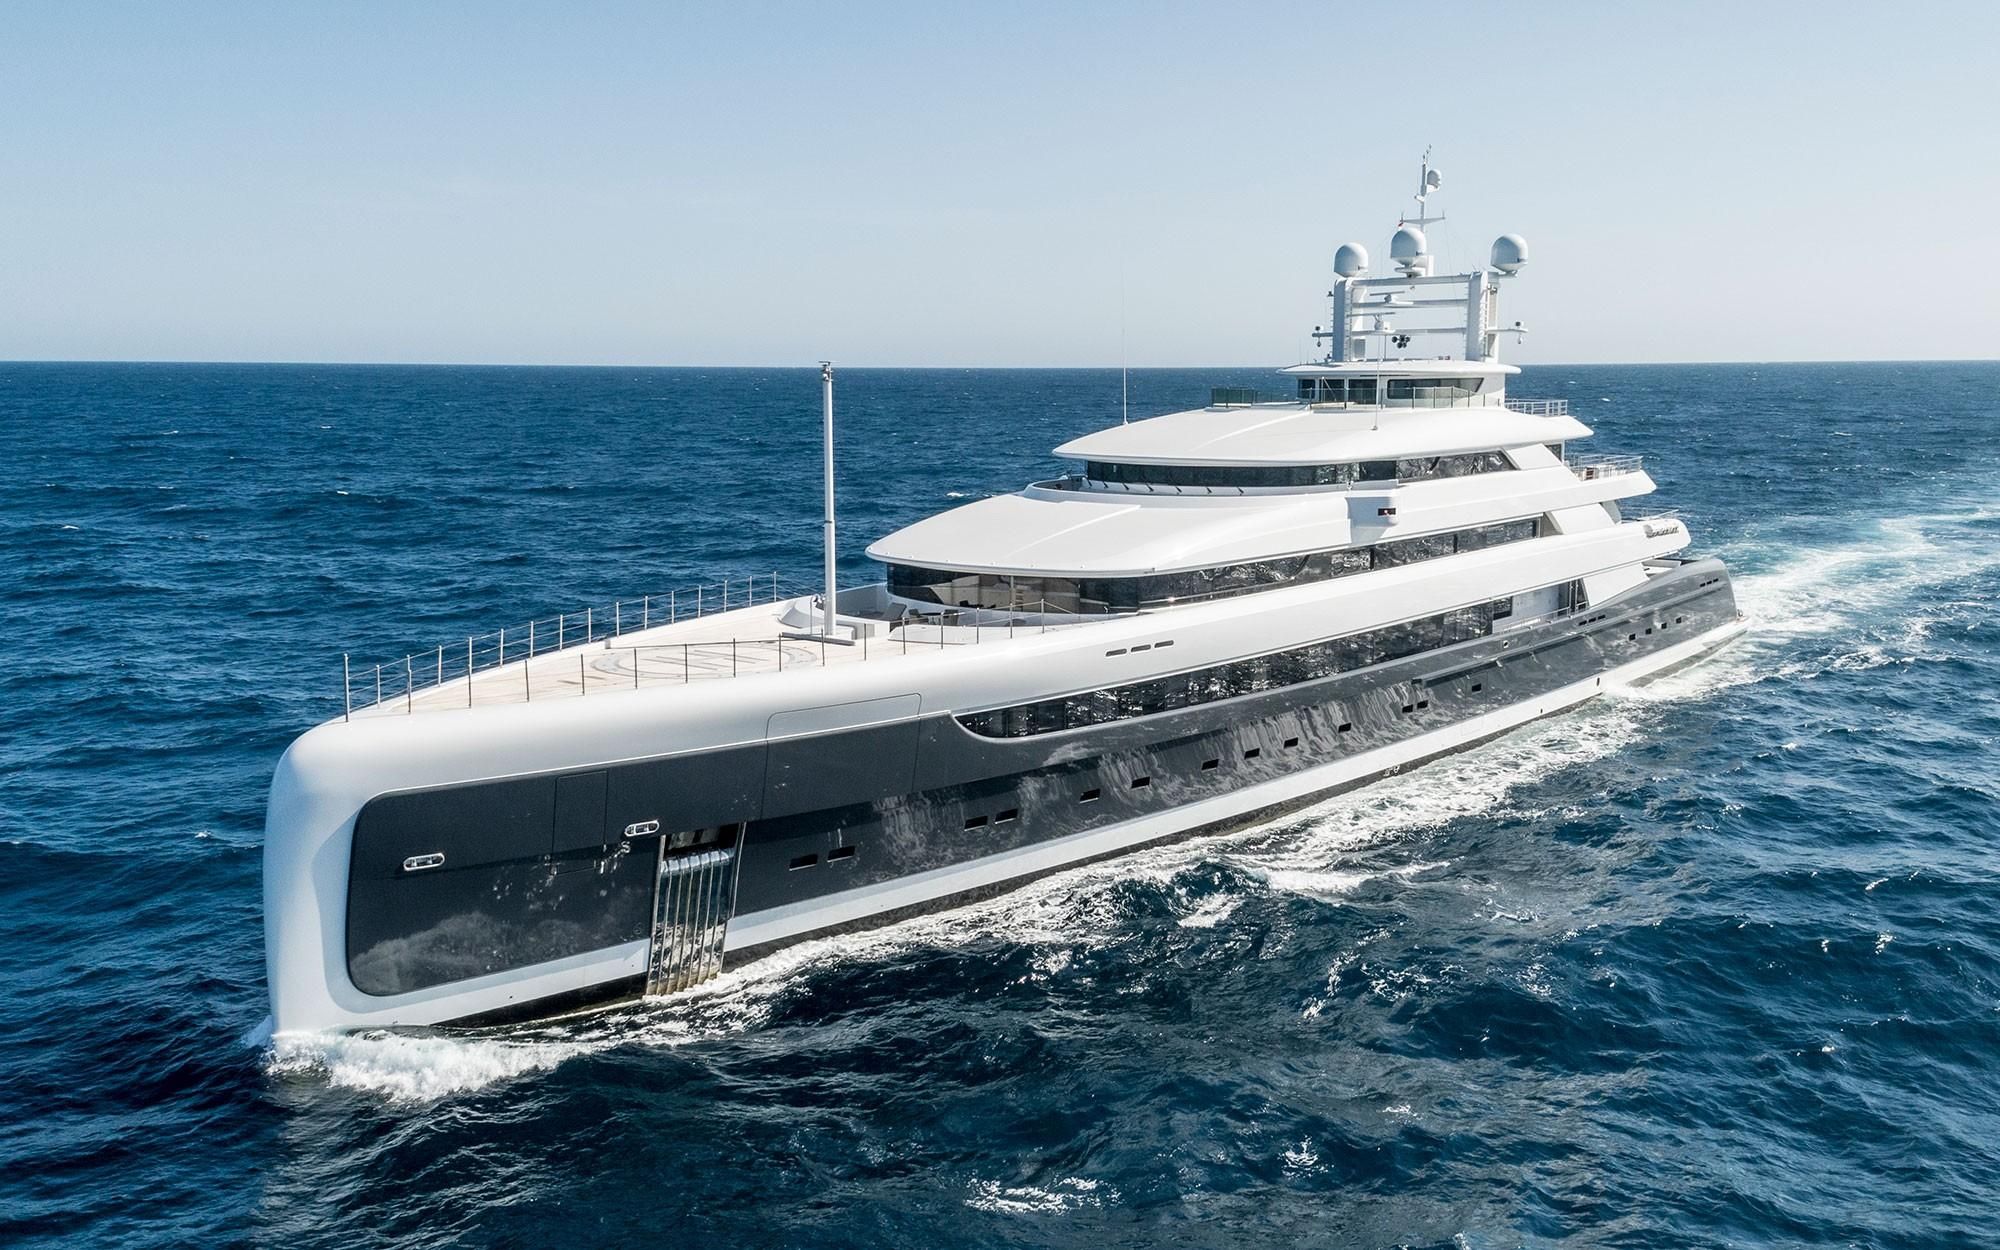 yacht 4 million euro